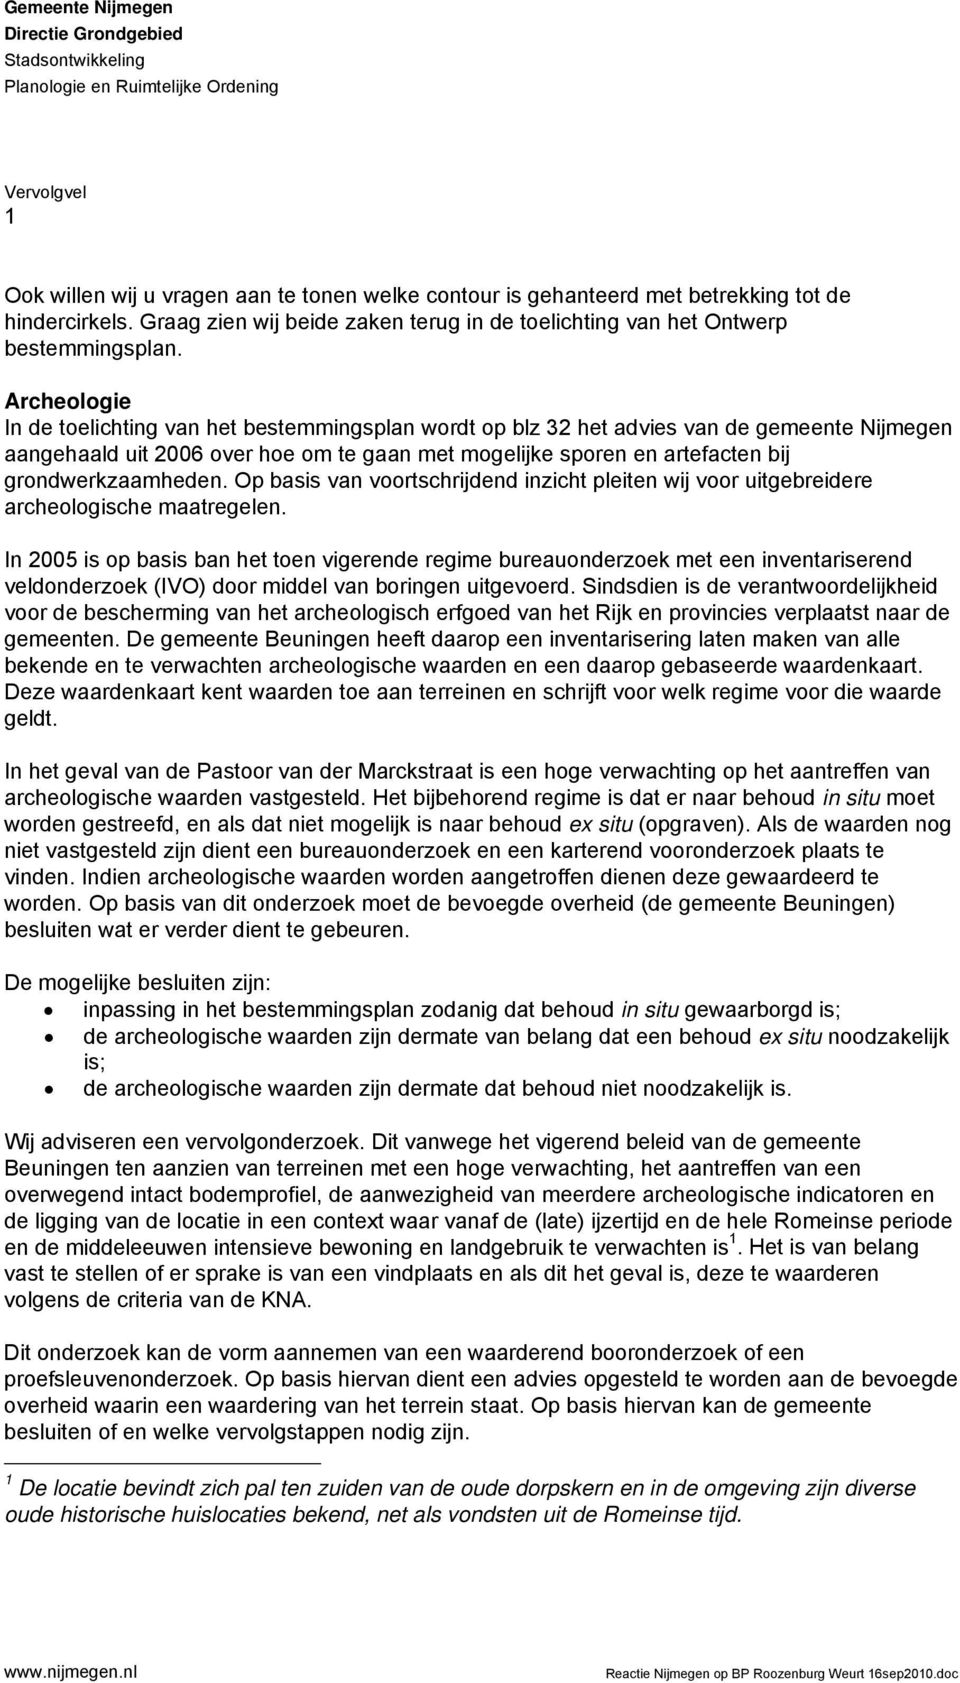 Archeologie In de toelichting van het bestemmingsplan wordt op blz 32 het advies van de gemeente Nijmegen aangehaald uit 2006 over hoe om te gaan met mogelijke sporen en artefacten bij